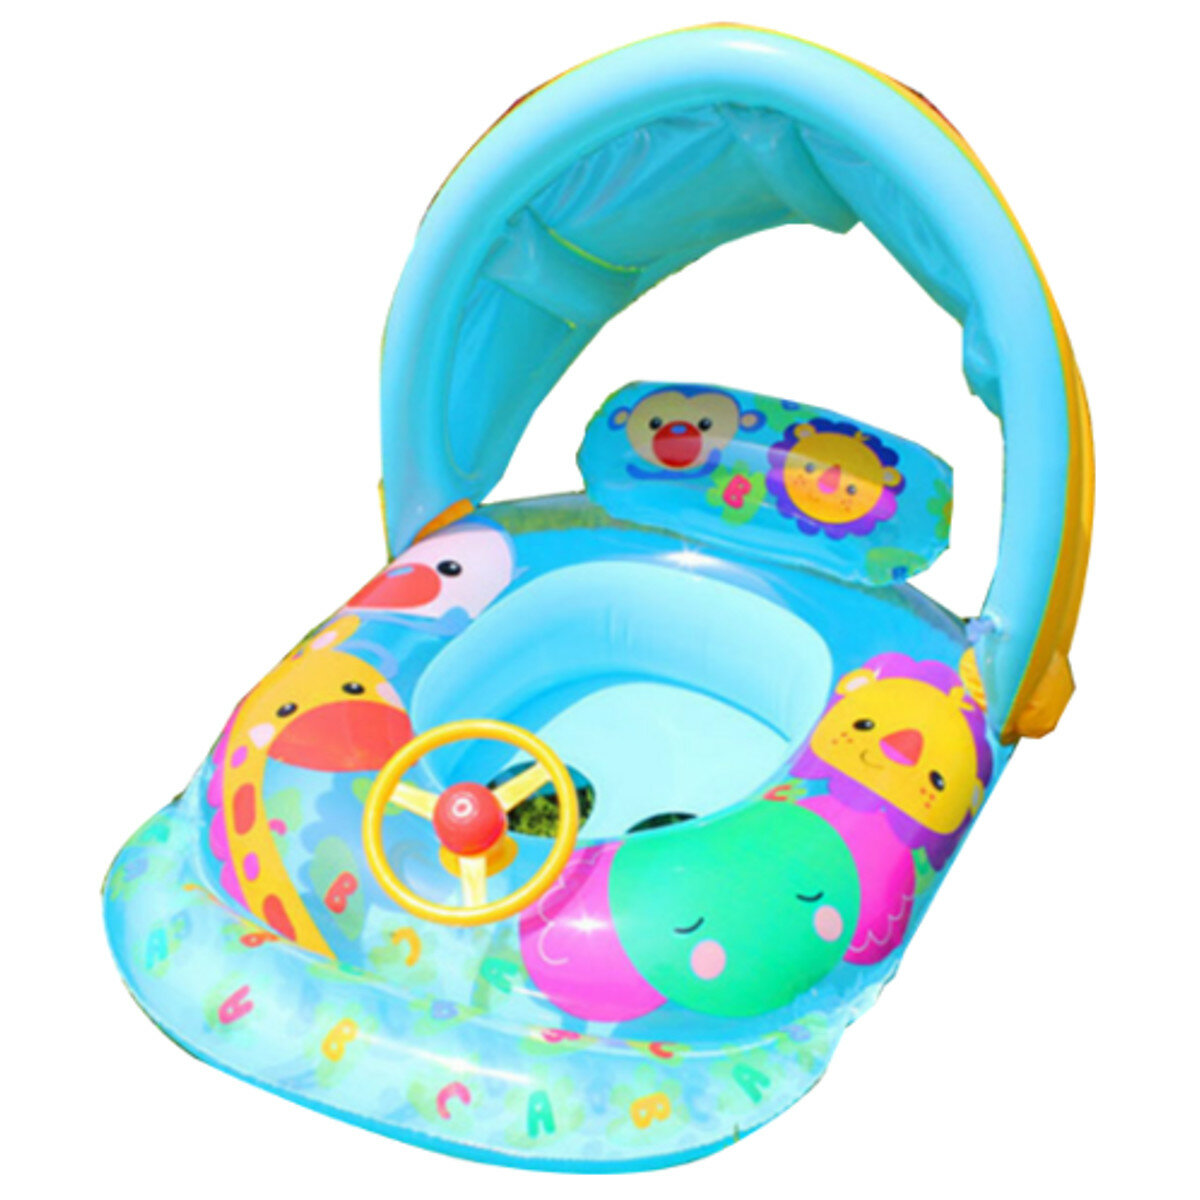 

Baby Kids Float Seat Надувные Лодка Кольцо для плавания Fun Плавание Бассейн с навесом